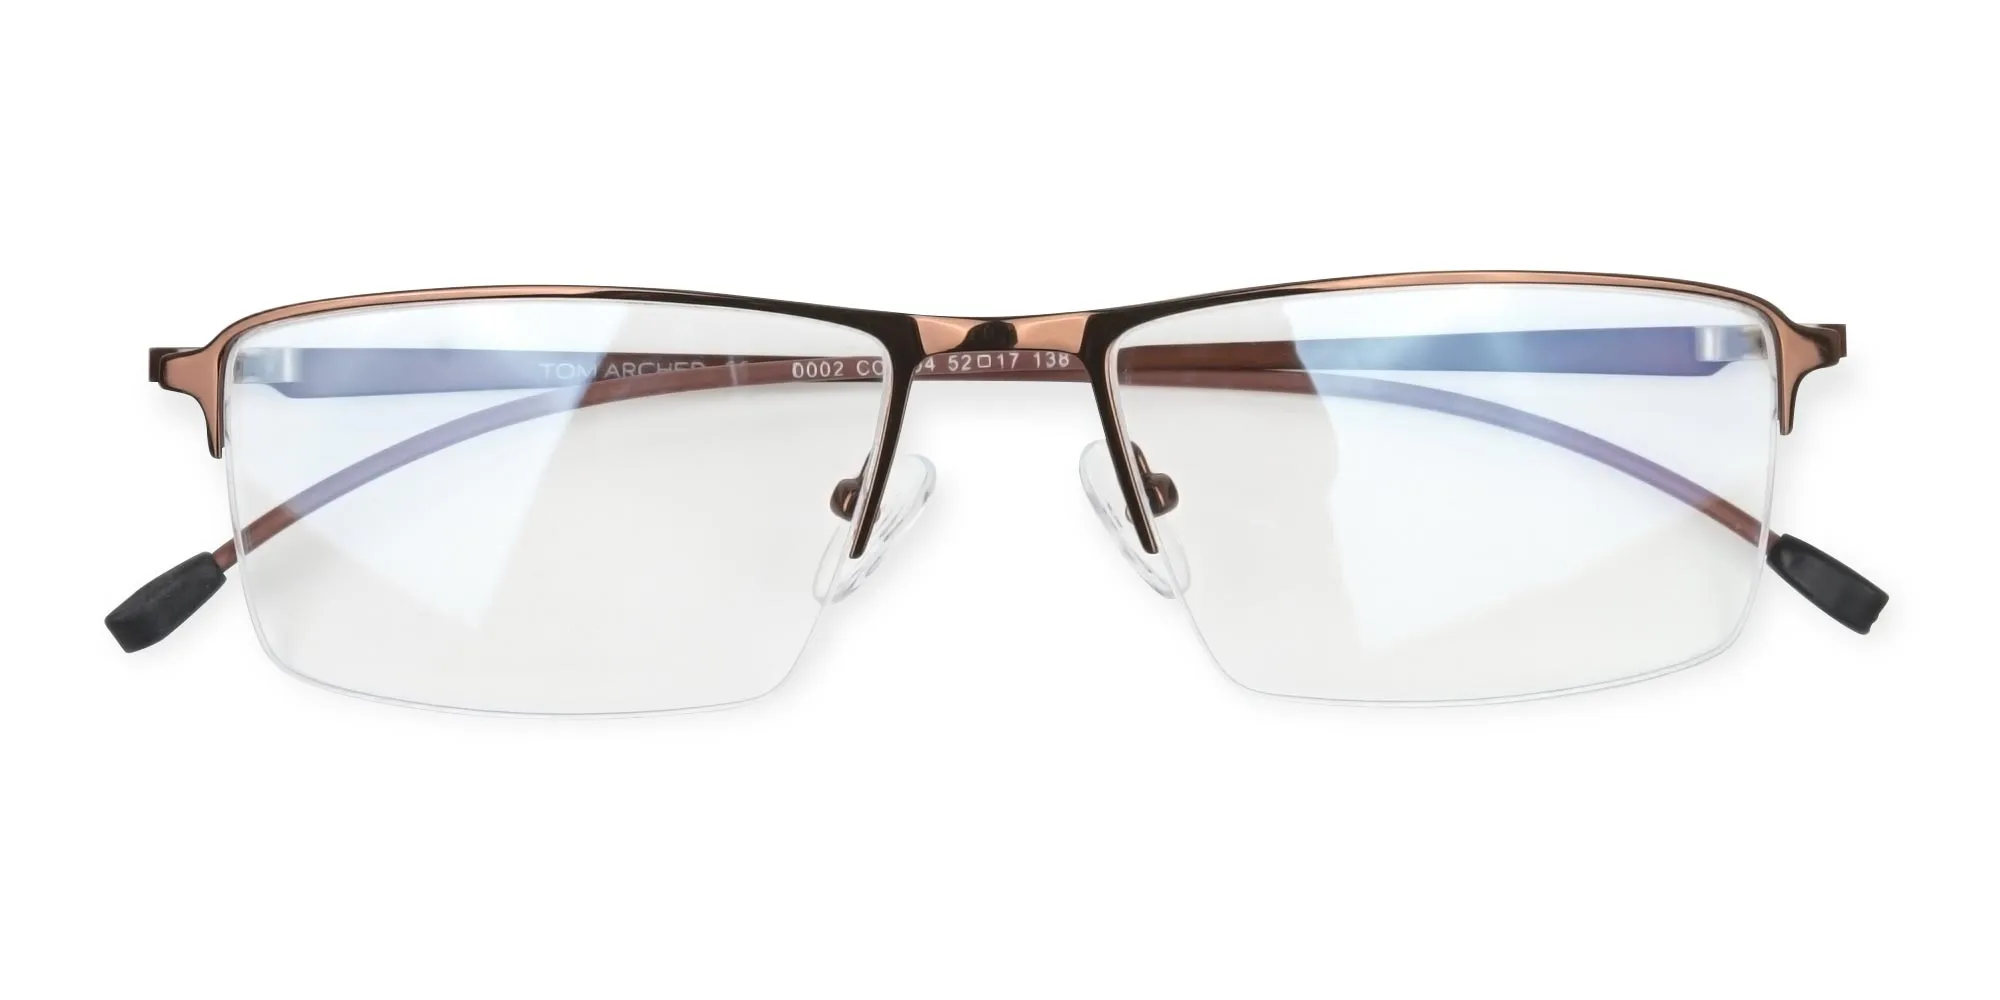 Brown Semi-Rim Glasses with Spring Hinges-2